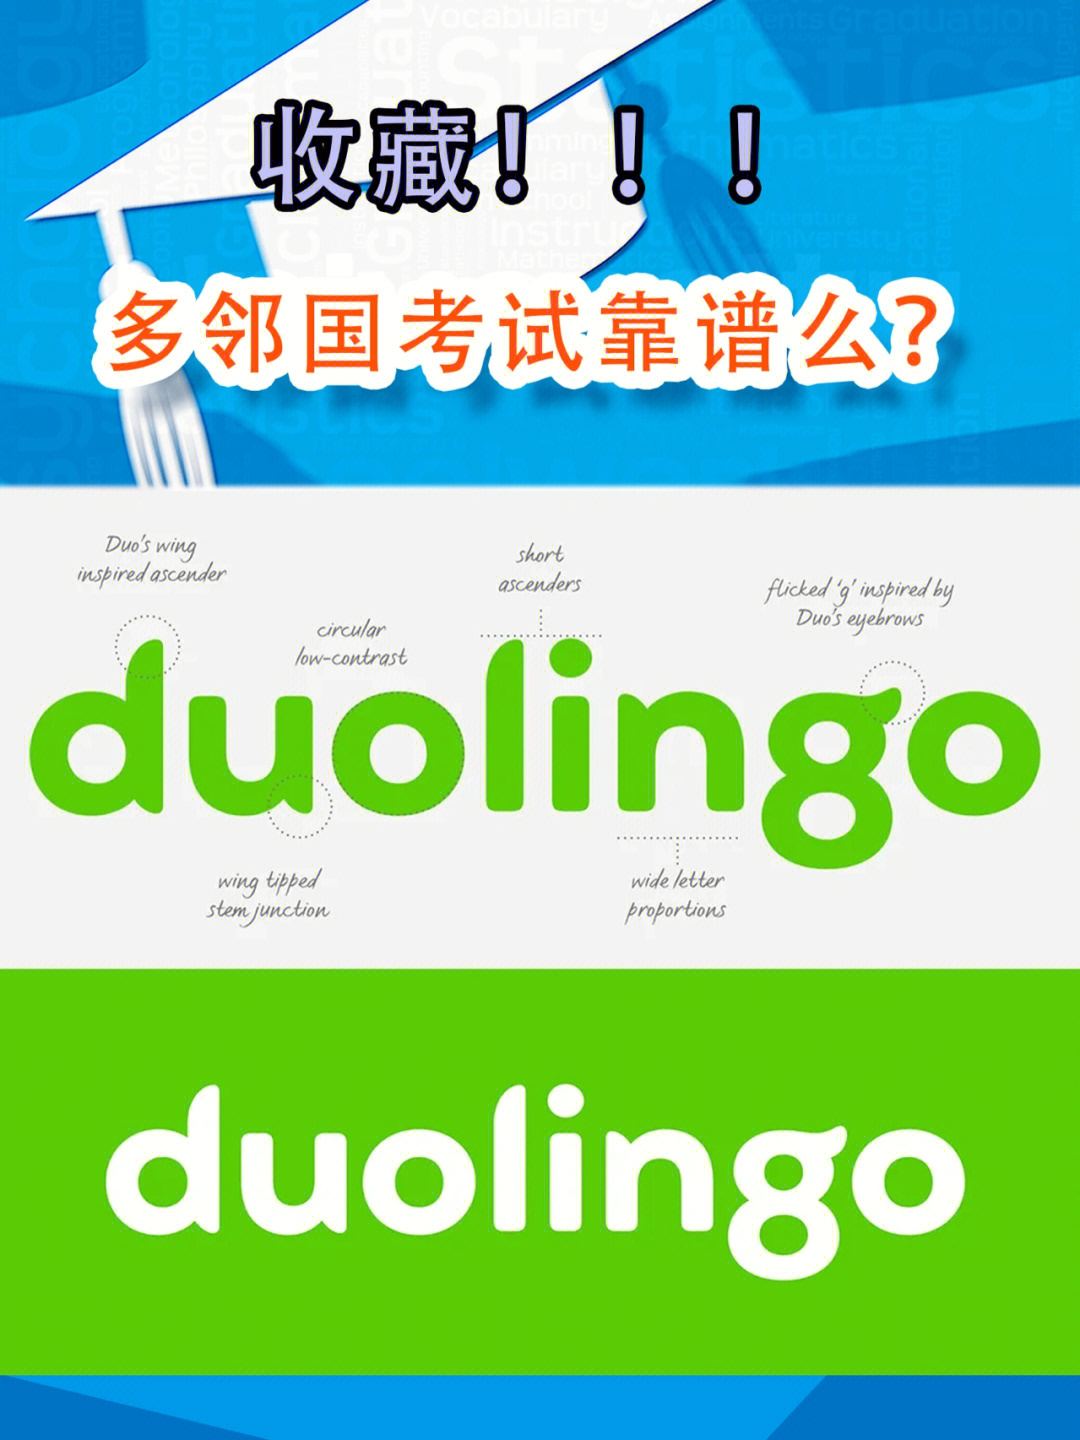 这时候不妨考虑一下duolingo,也就是多邻国考试